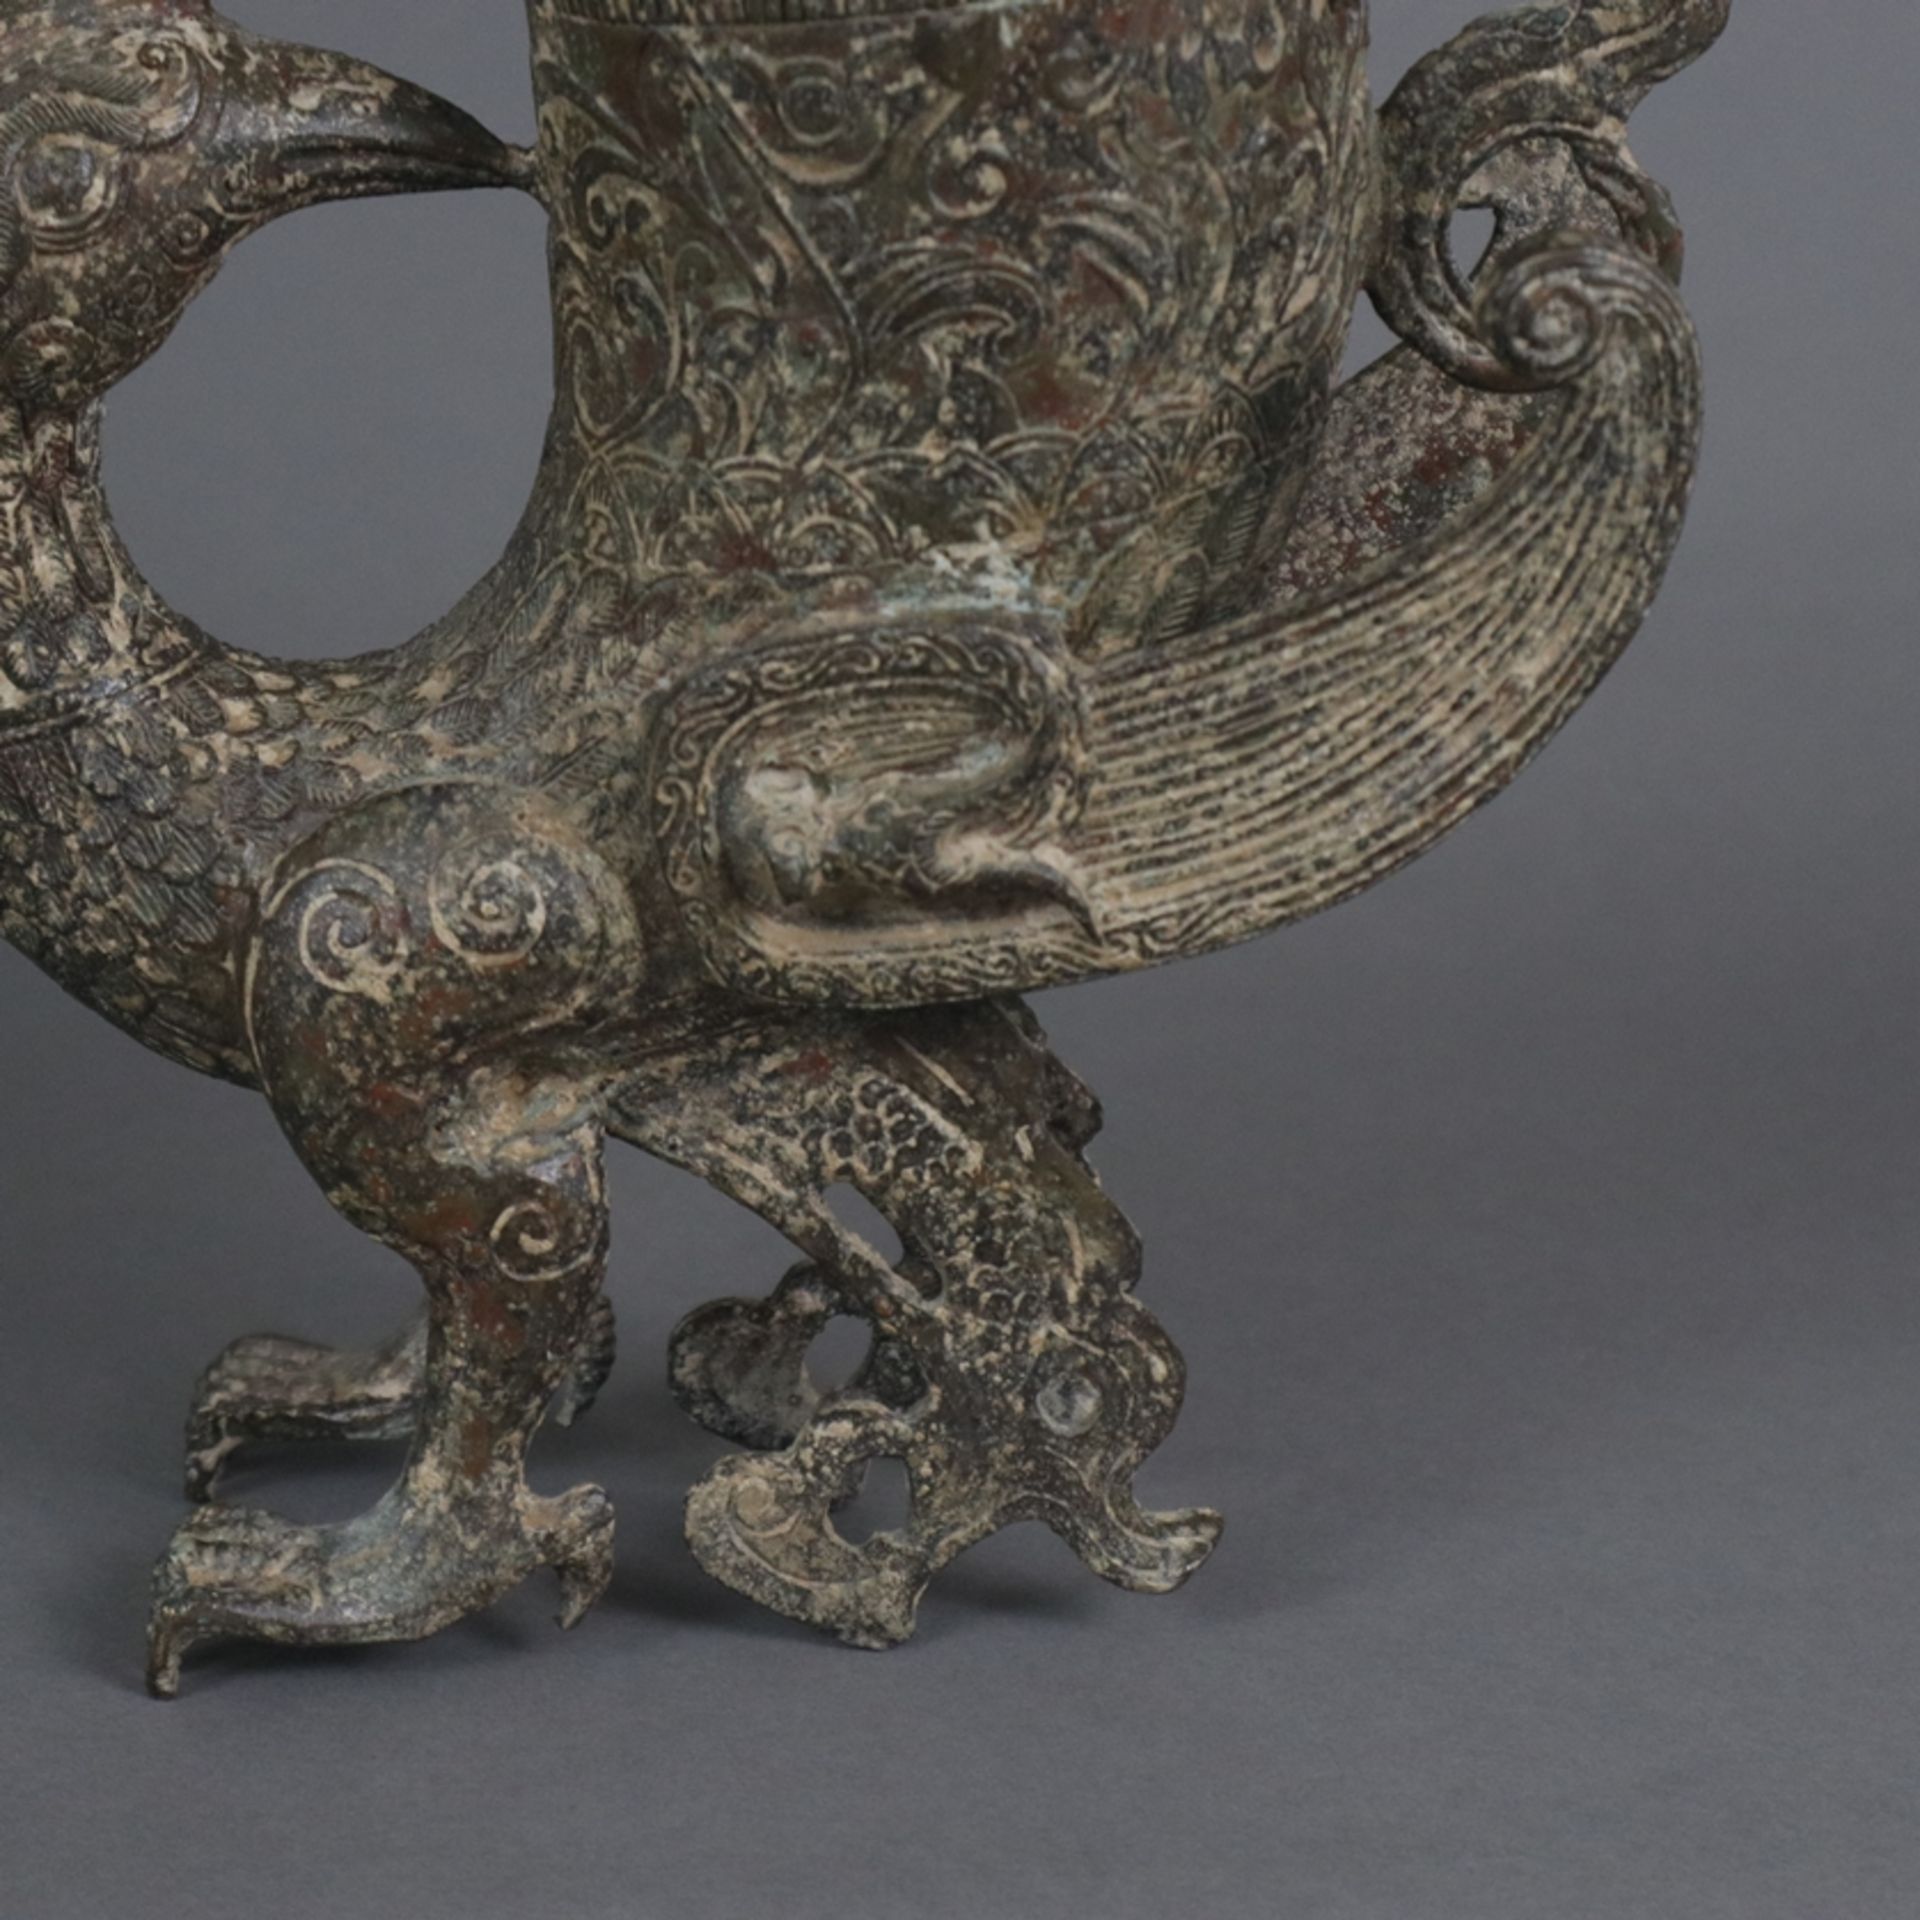 Gefäß in Vogelform - China, in der Art der „zun“-Gefäße aus der Shang-Zeit, gegossene Bronzelegieru - Image 5 of 8